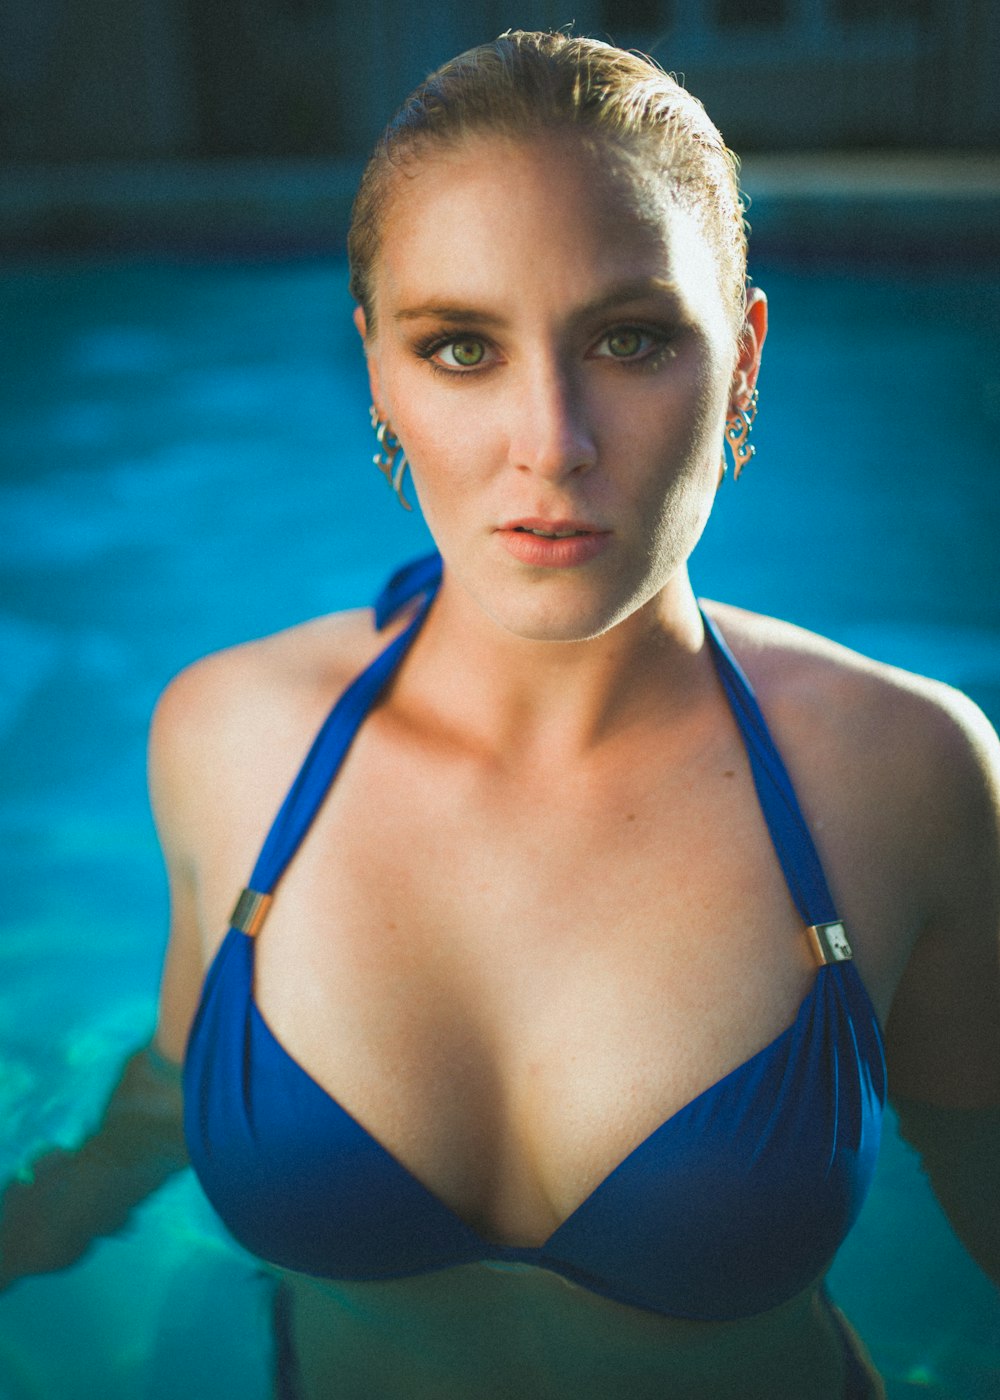 mulher em corda azul biquíni top na piscina olhando reto